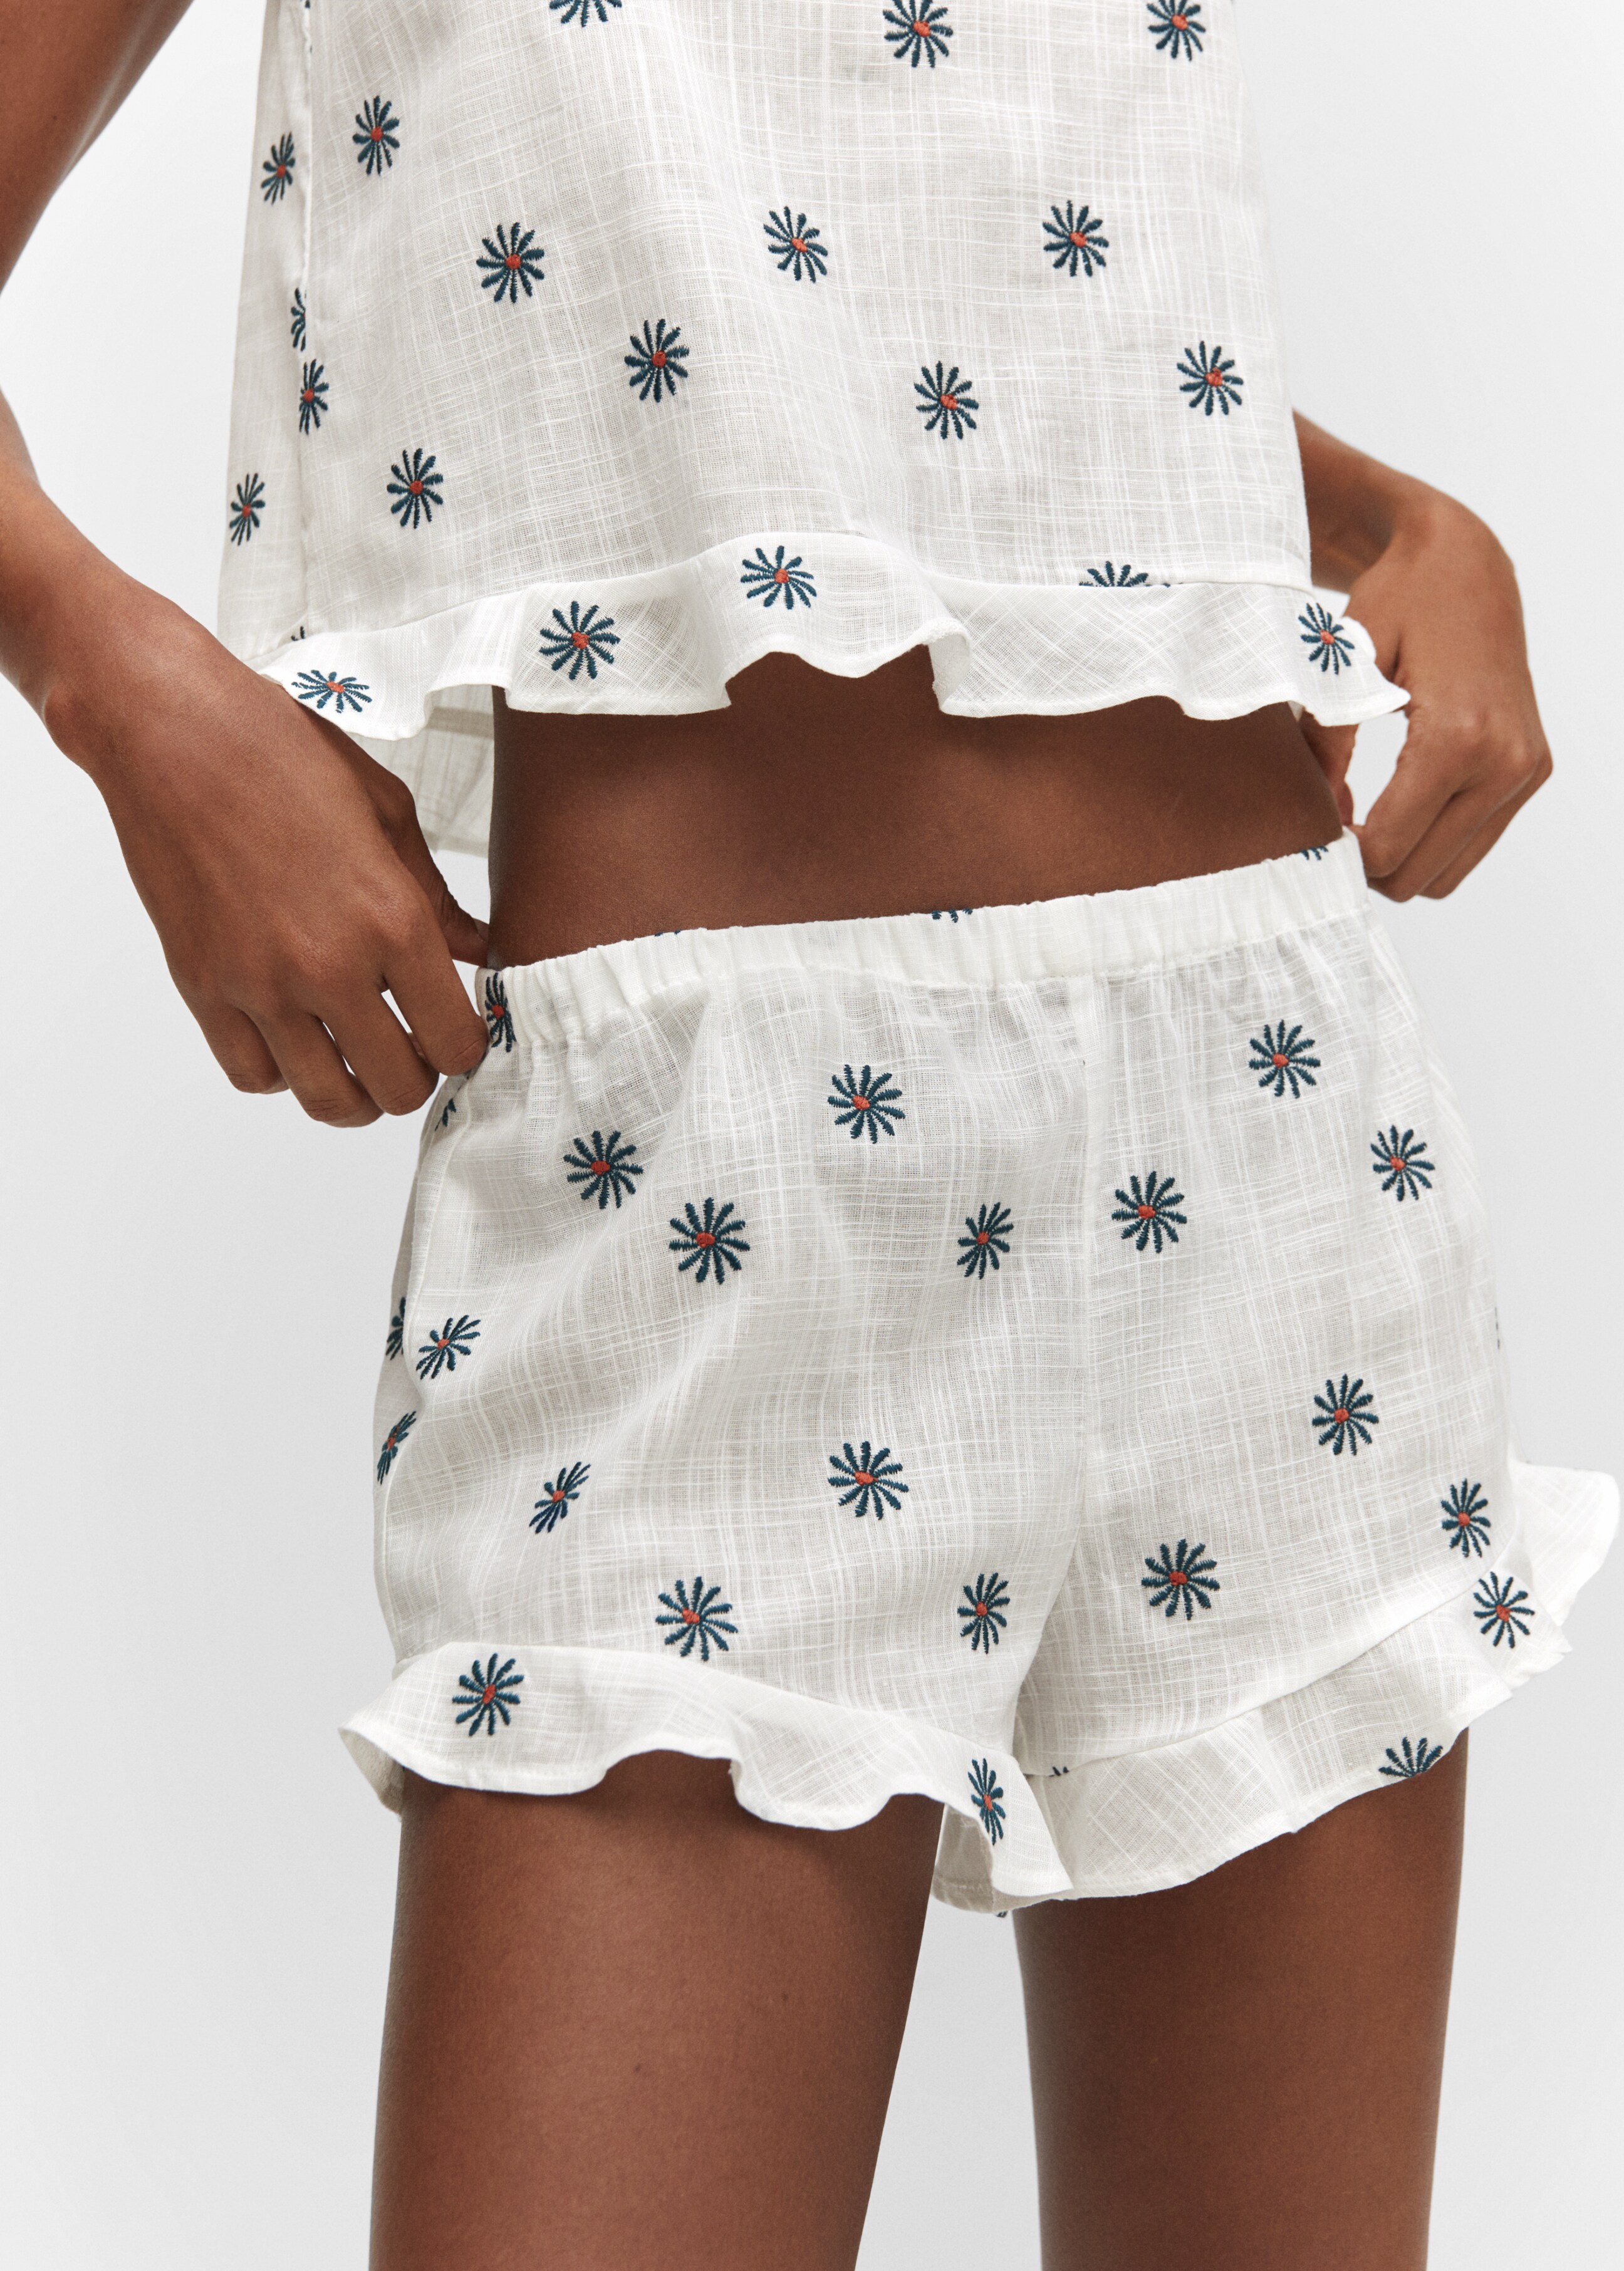 Shorts pijama bordado flores - Detalle del artículo 1